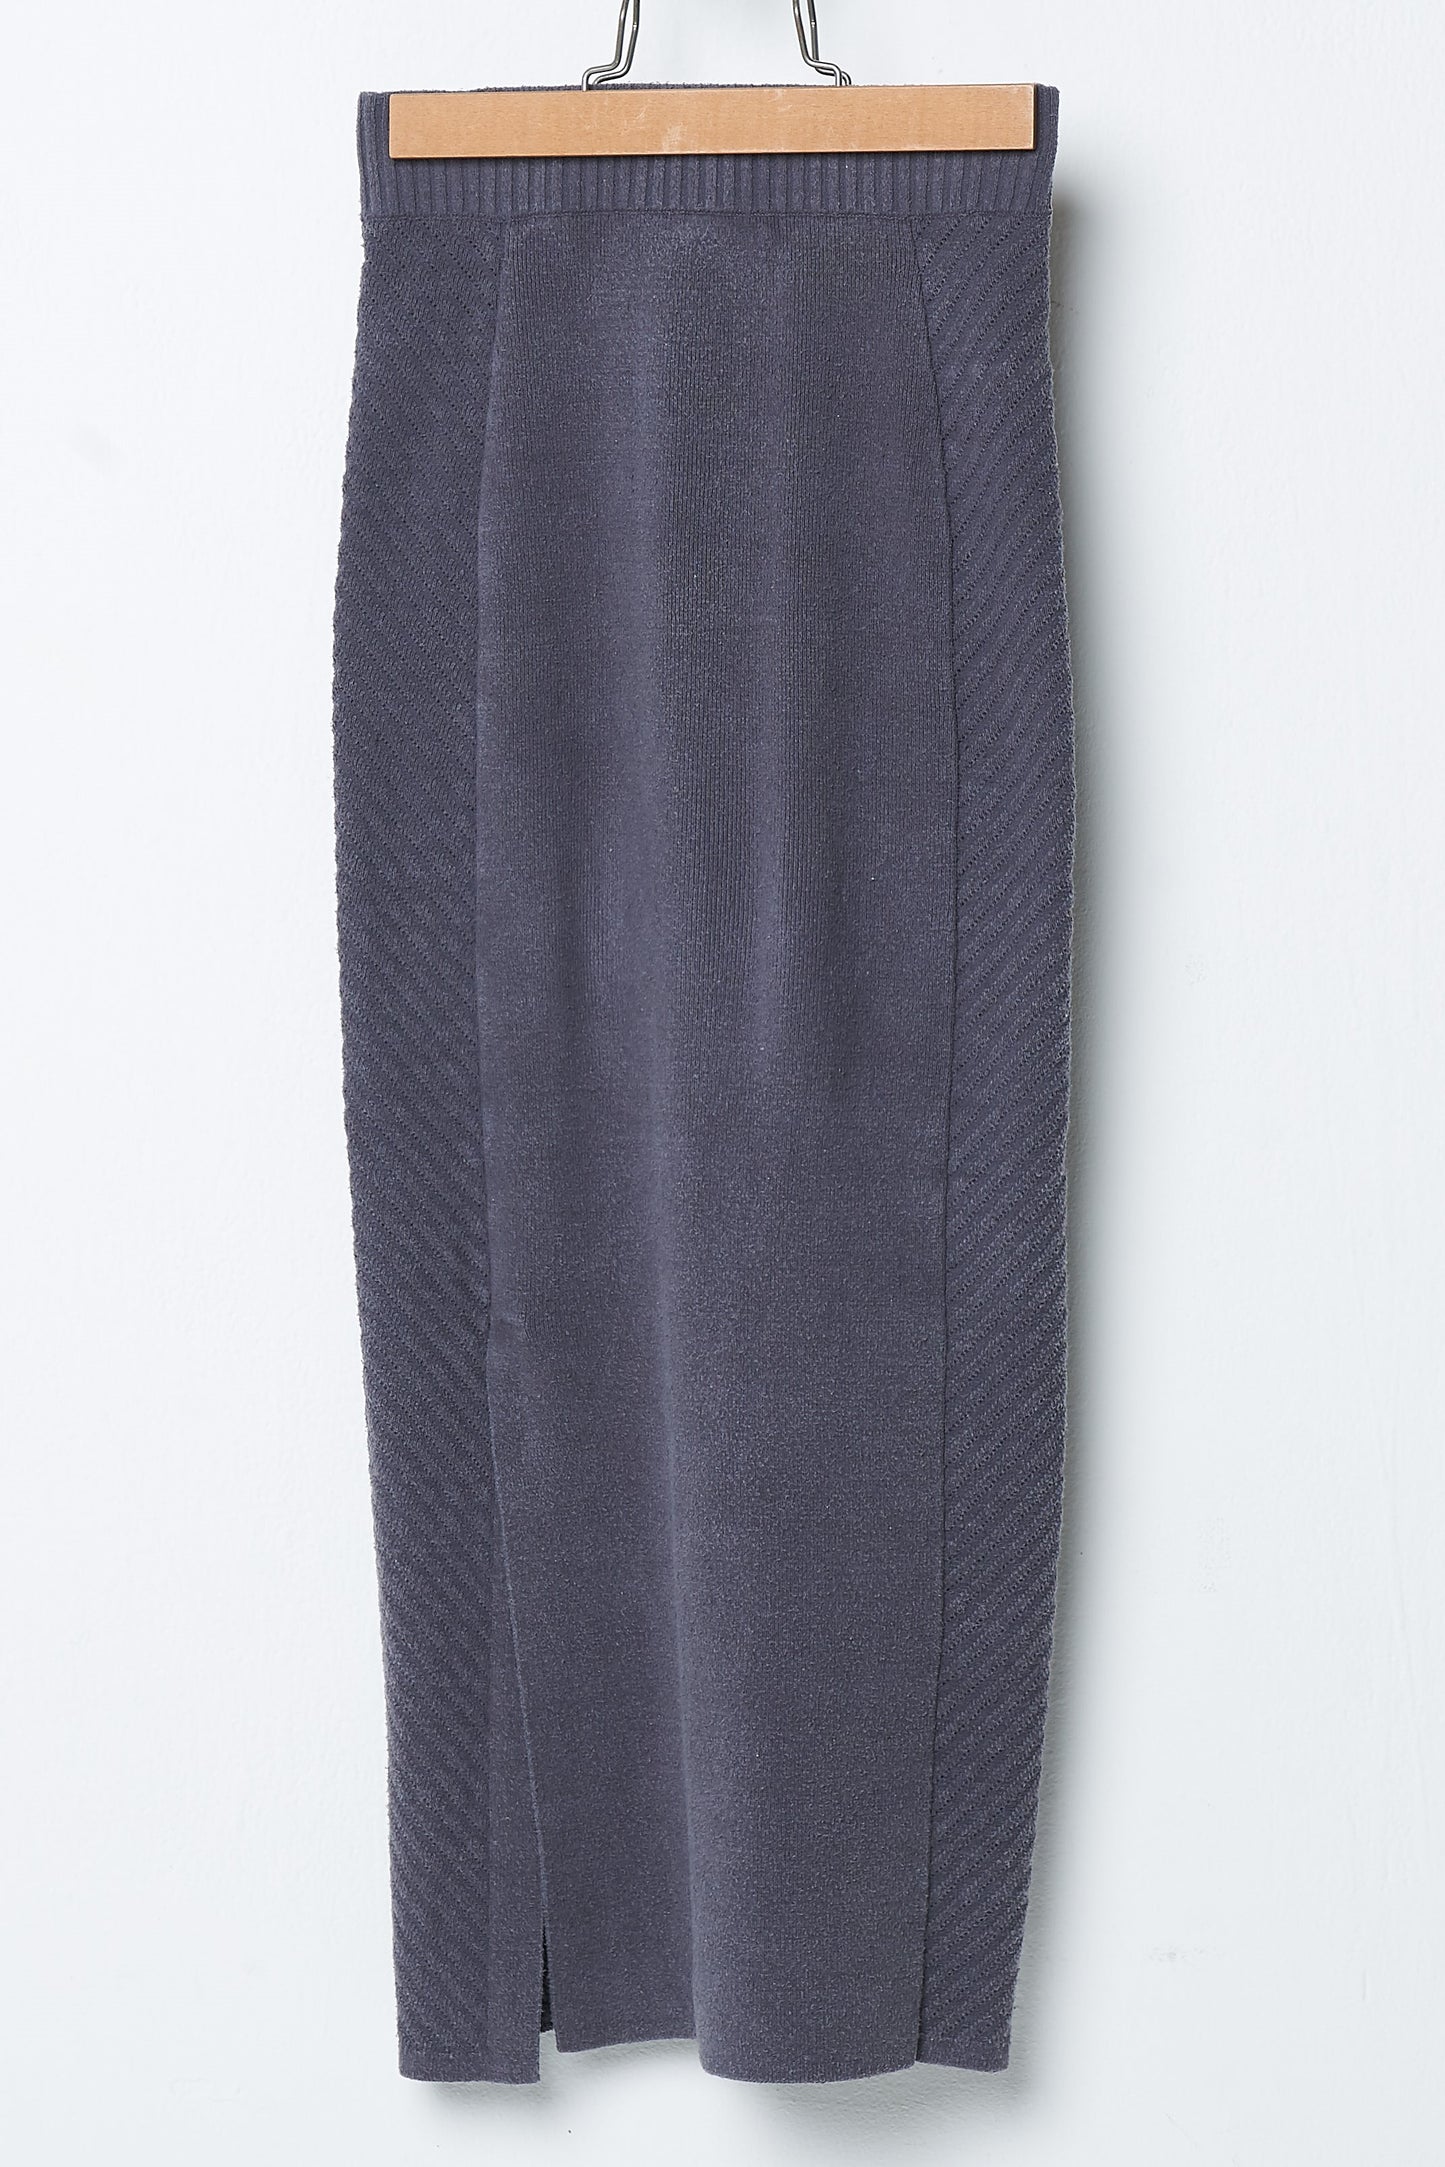 Raw silk knitted long skirt